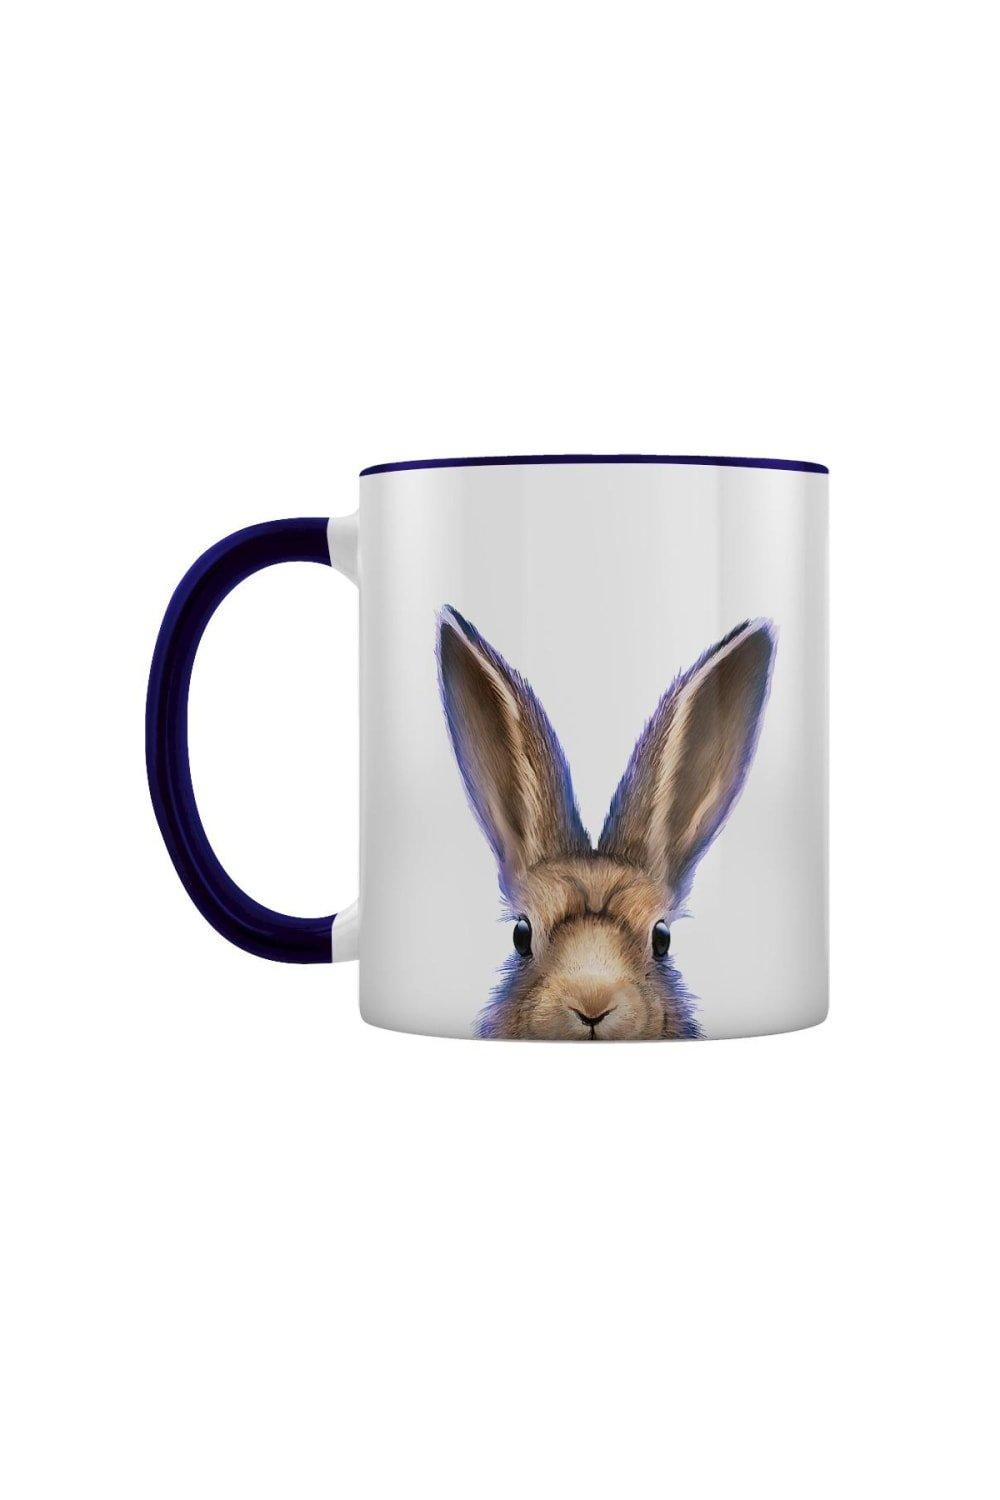 Photos - Mug / Cup Hare Two Tone Mug